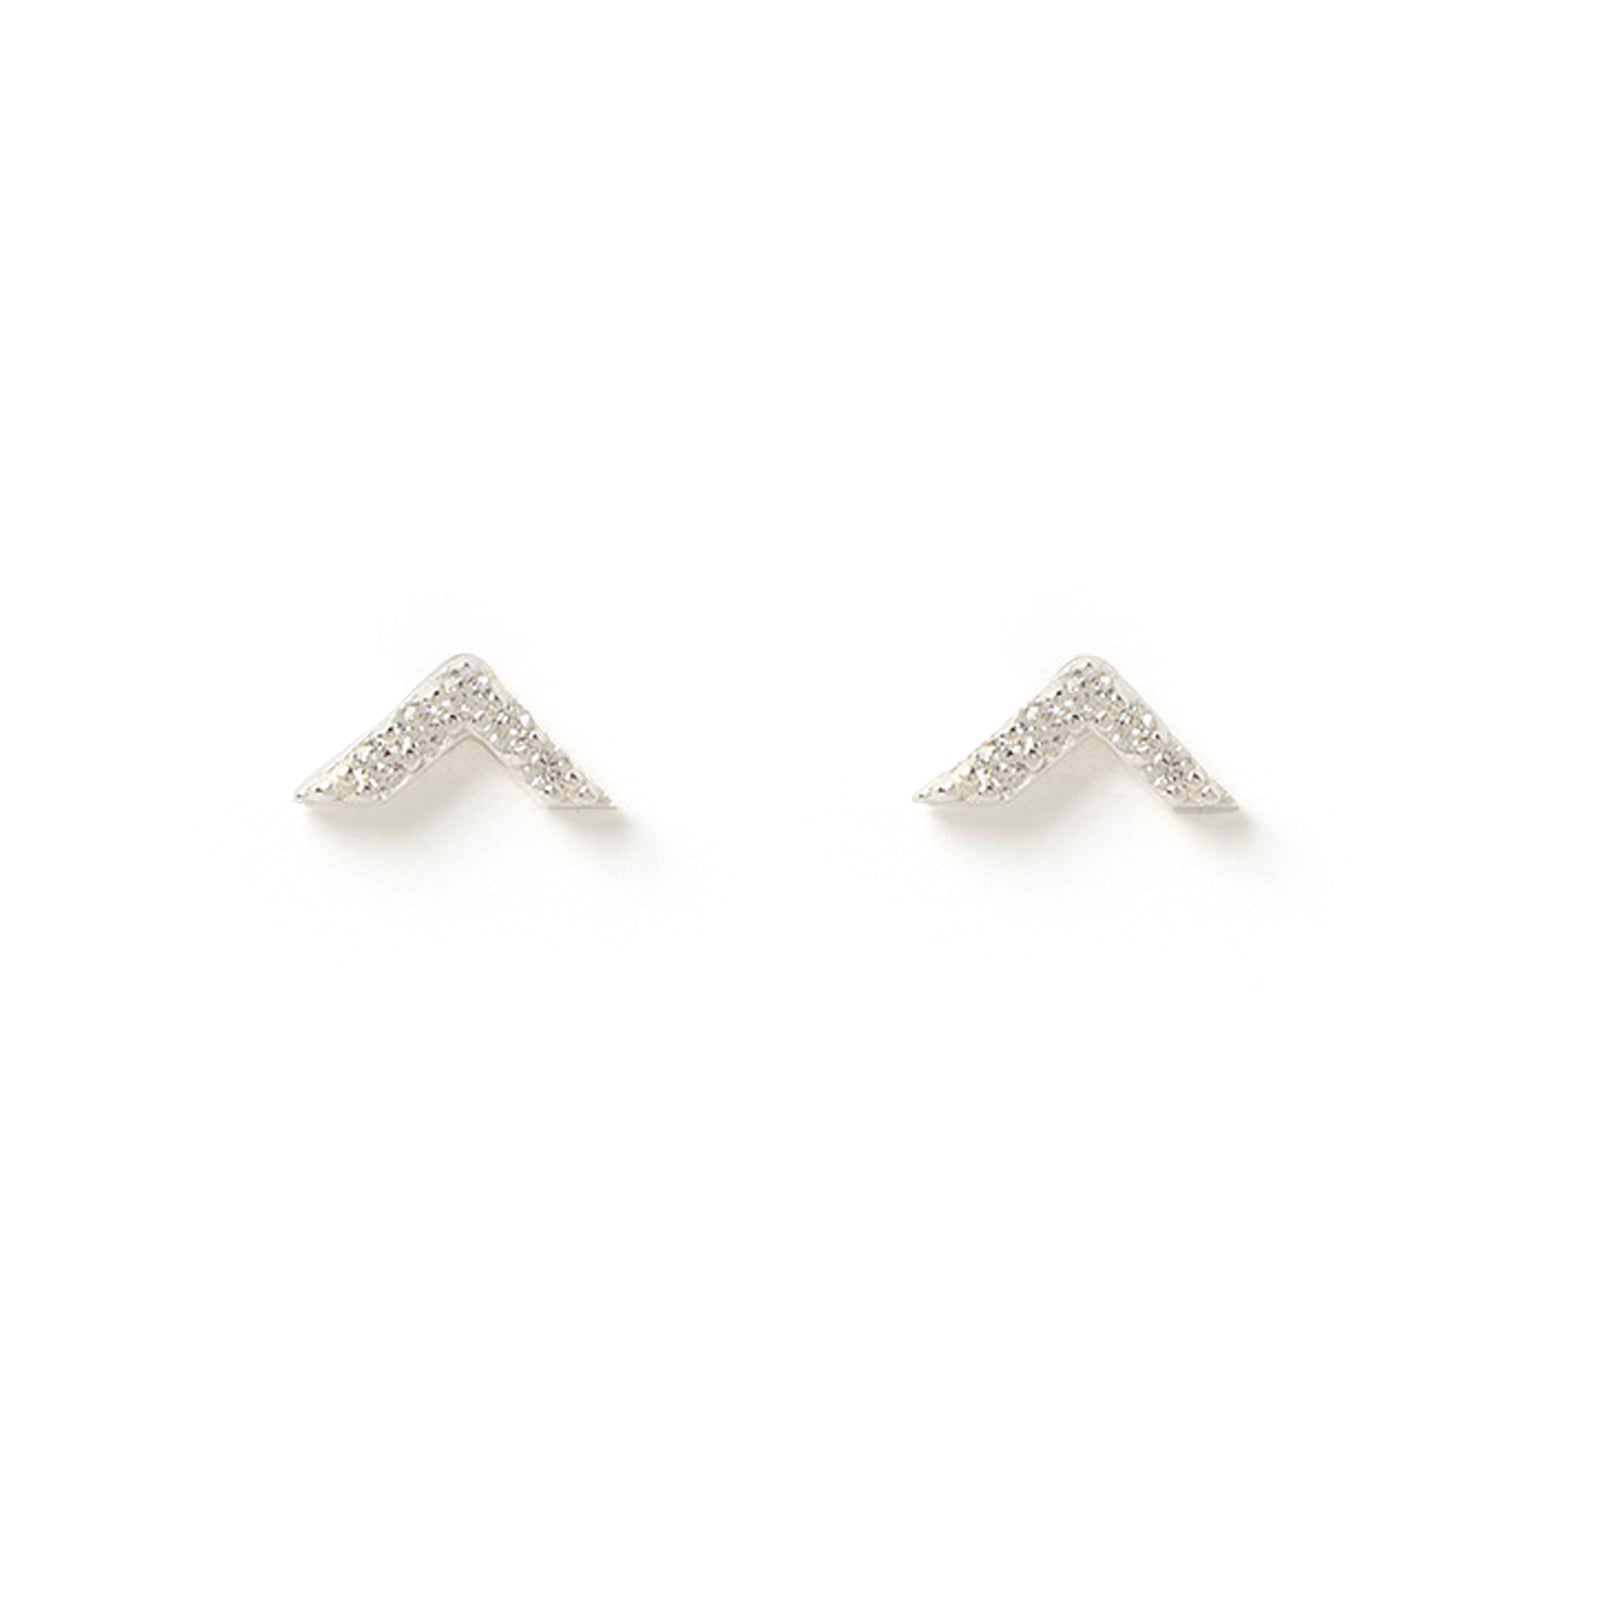 Arrow Silver and Zircon Stud Earrings